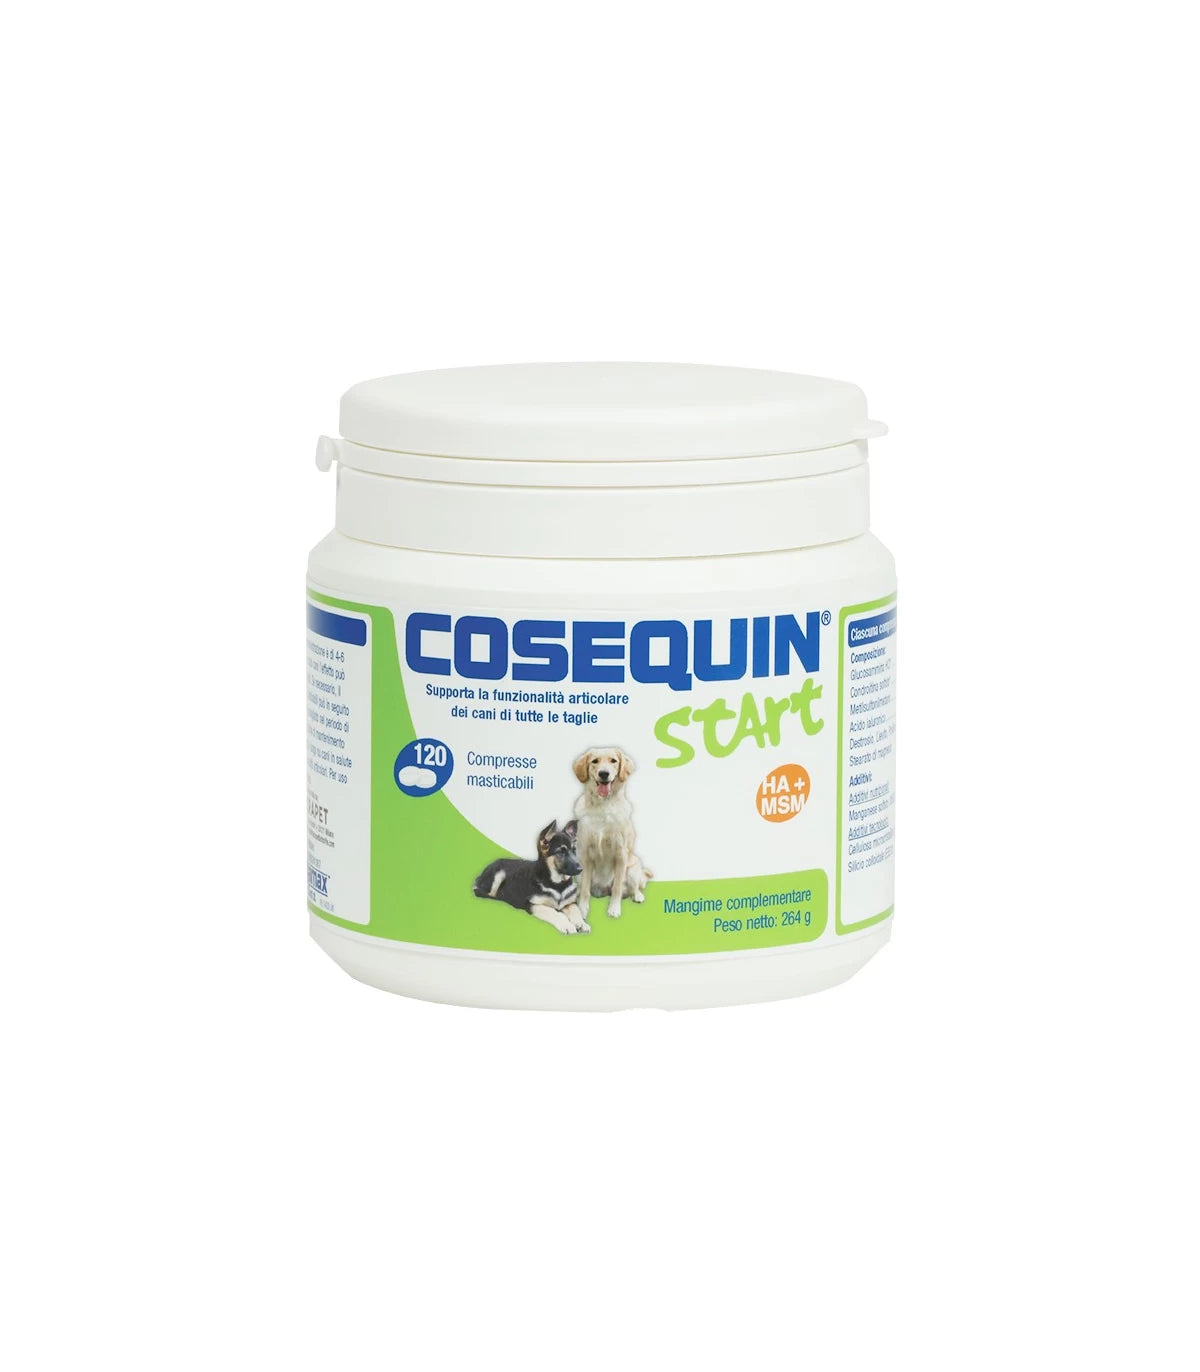 COSEQUIN START (120 cpr) – Per le articolazioni di cuccioli e cani adulti